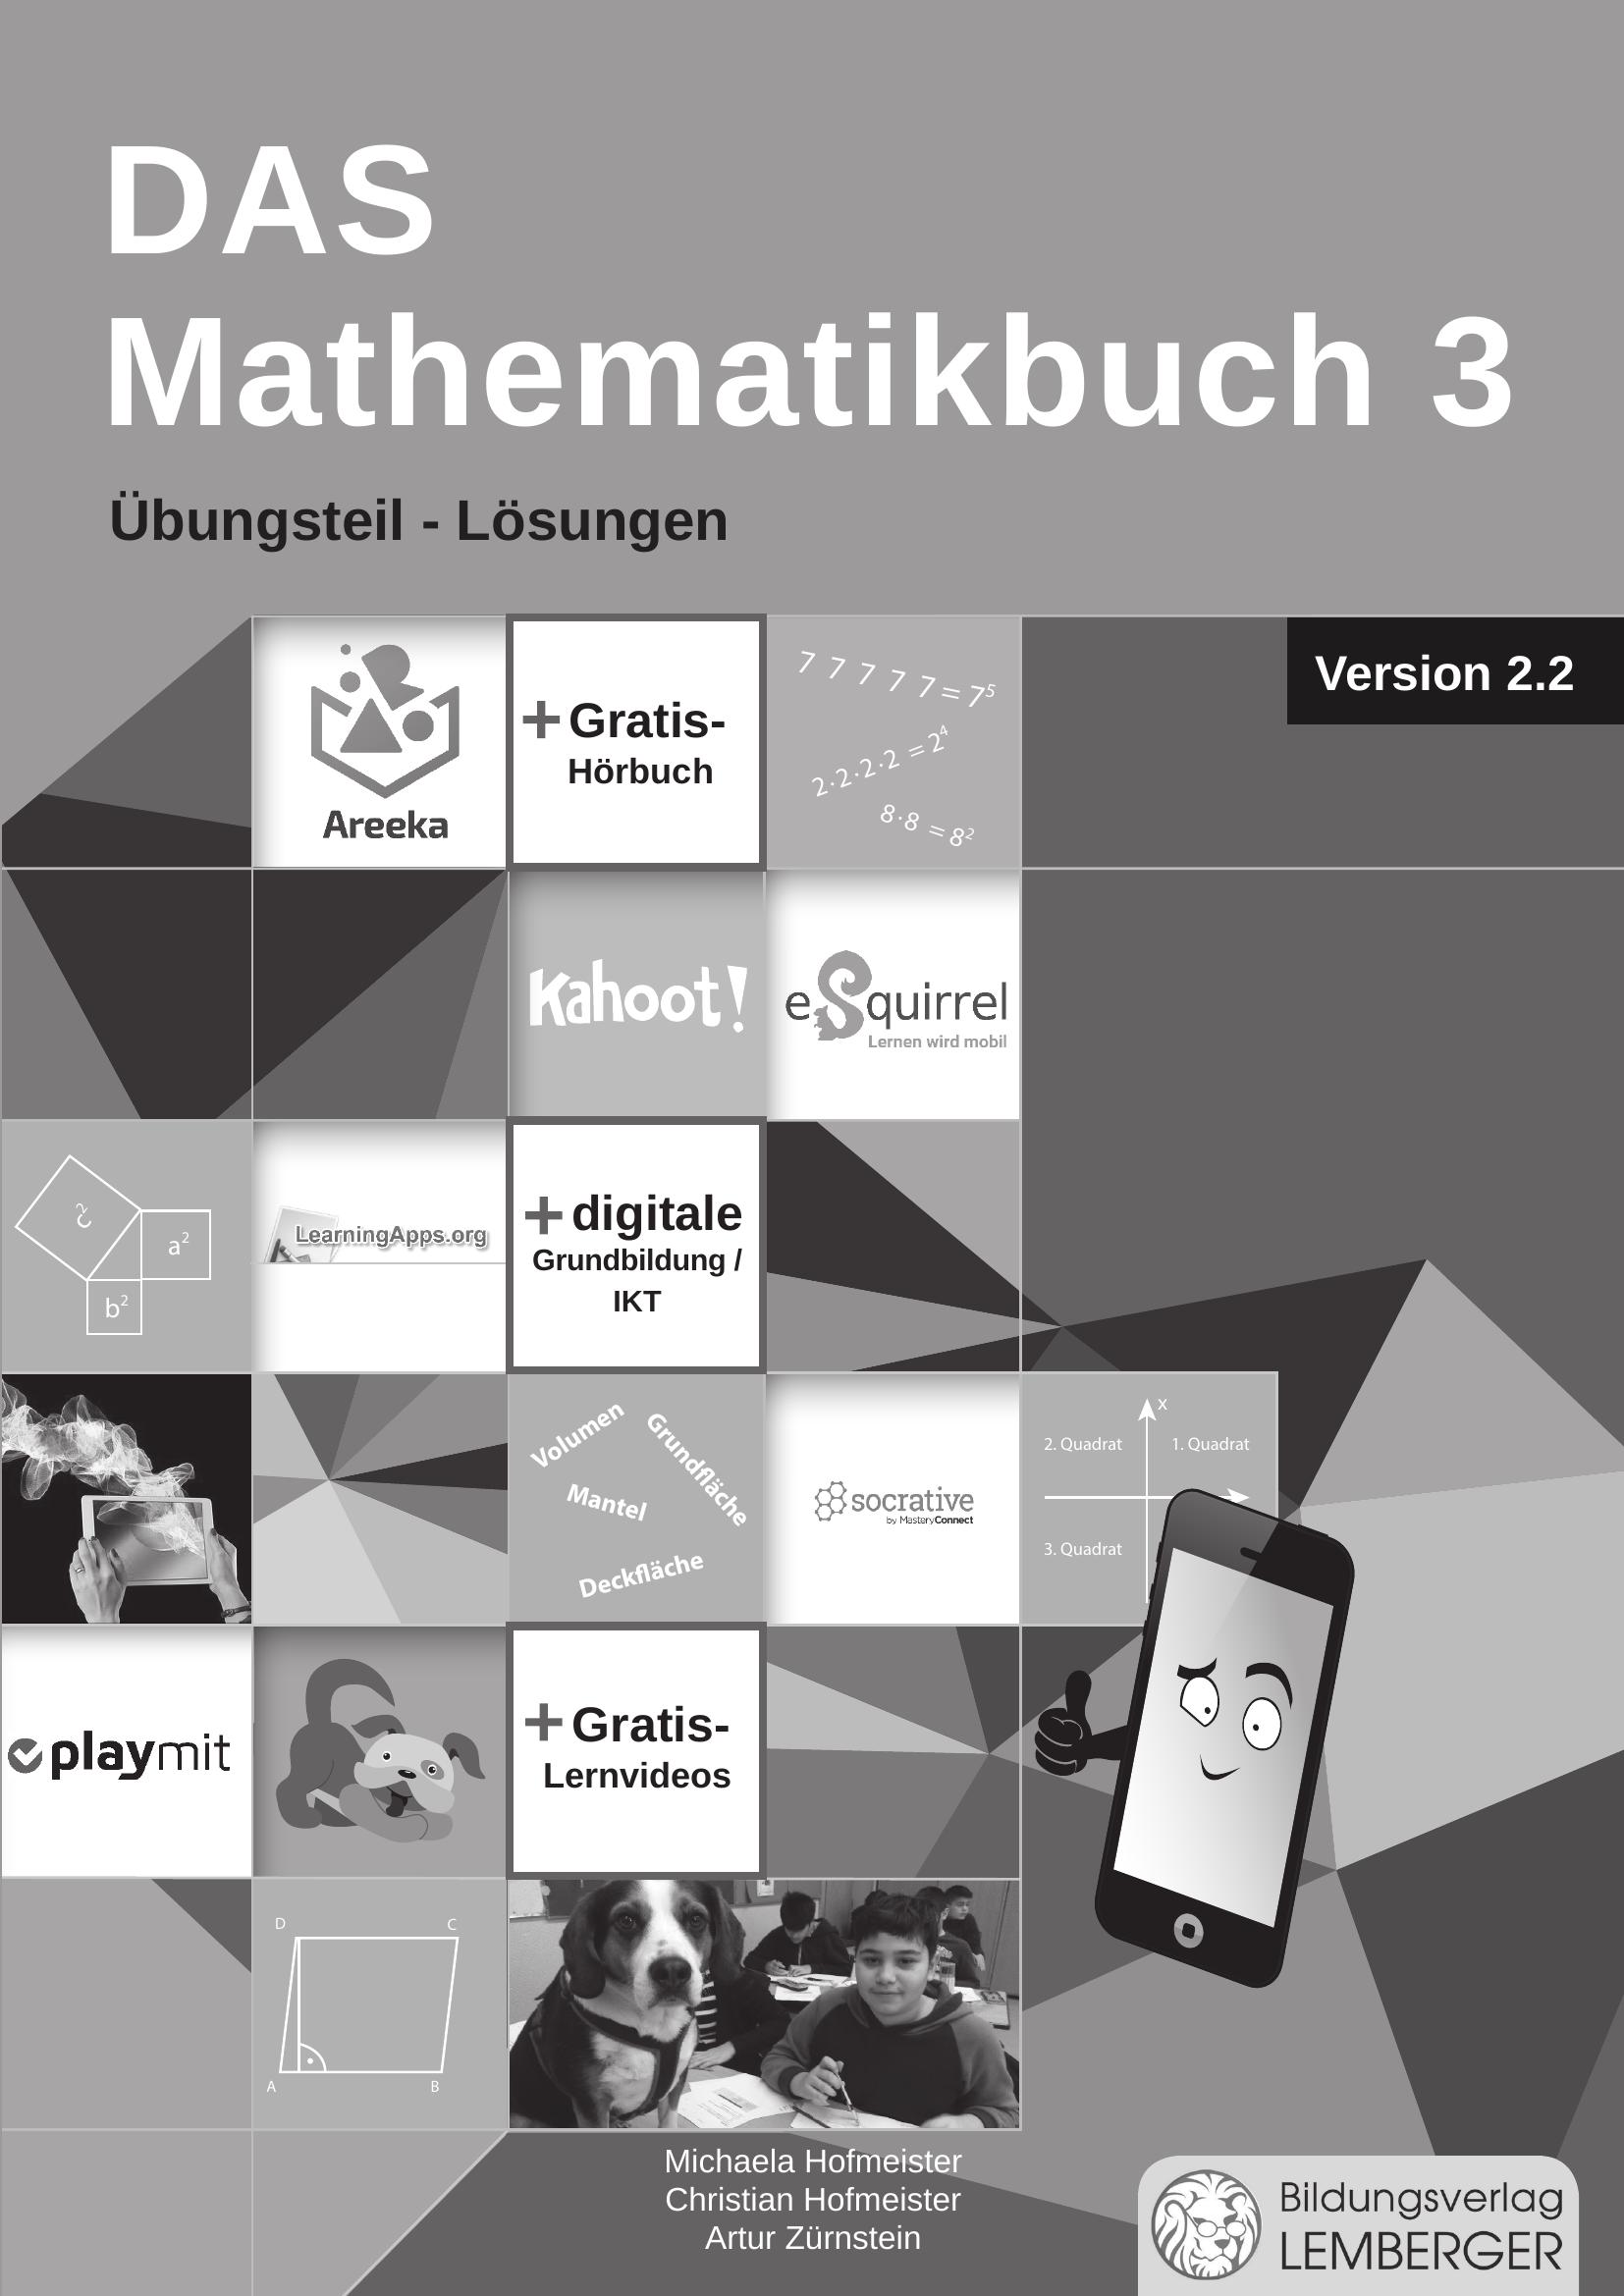 DAS Mathematikbuch 3 - Übungsteil IKT_Version 2.2 - Lösungen